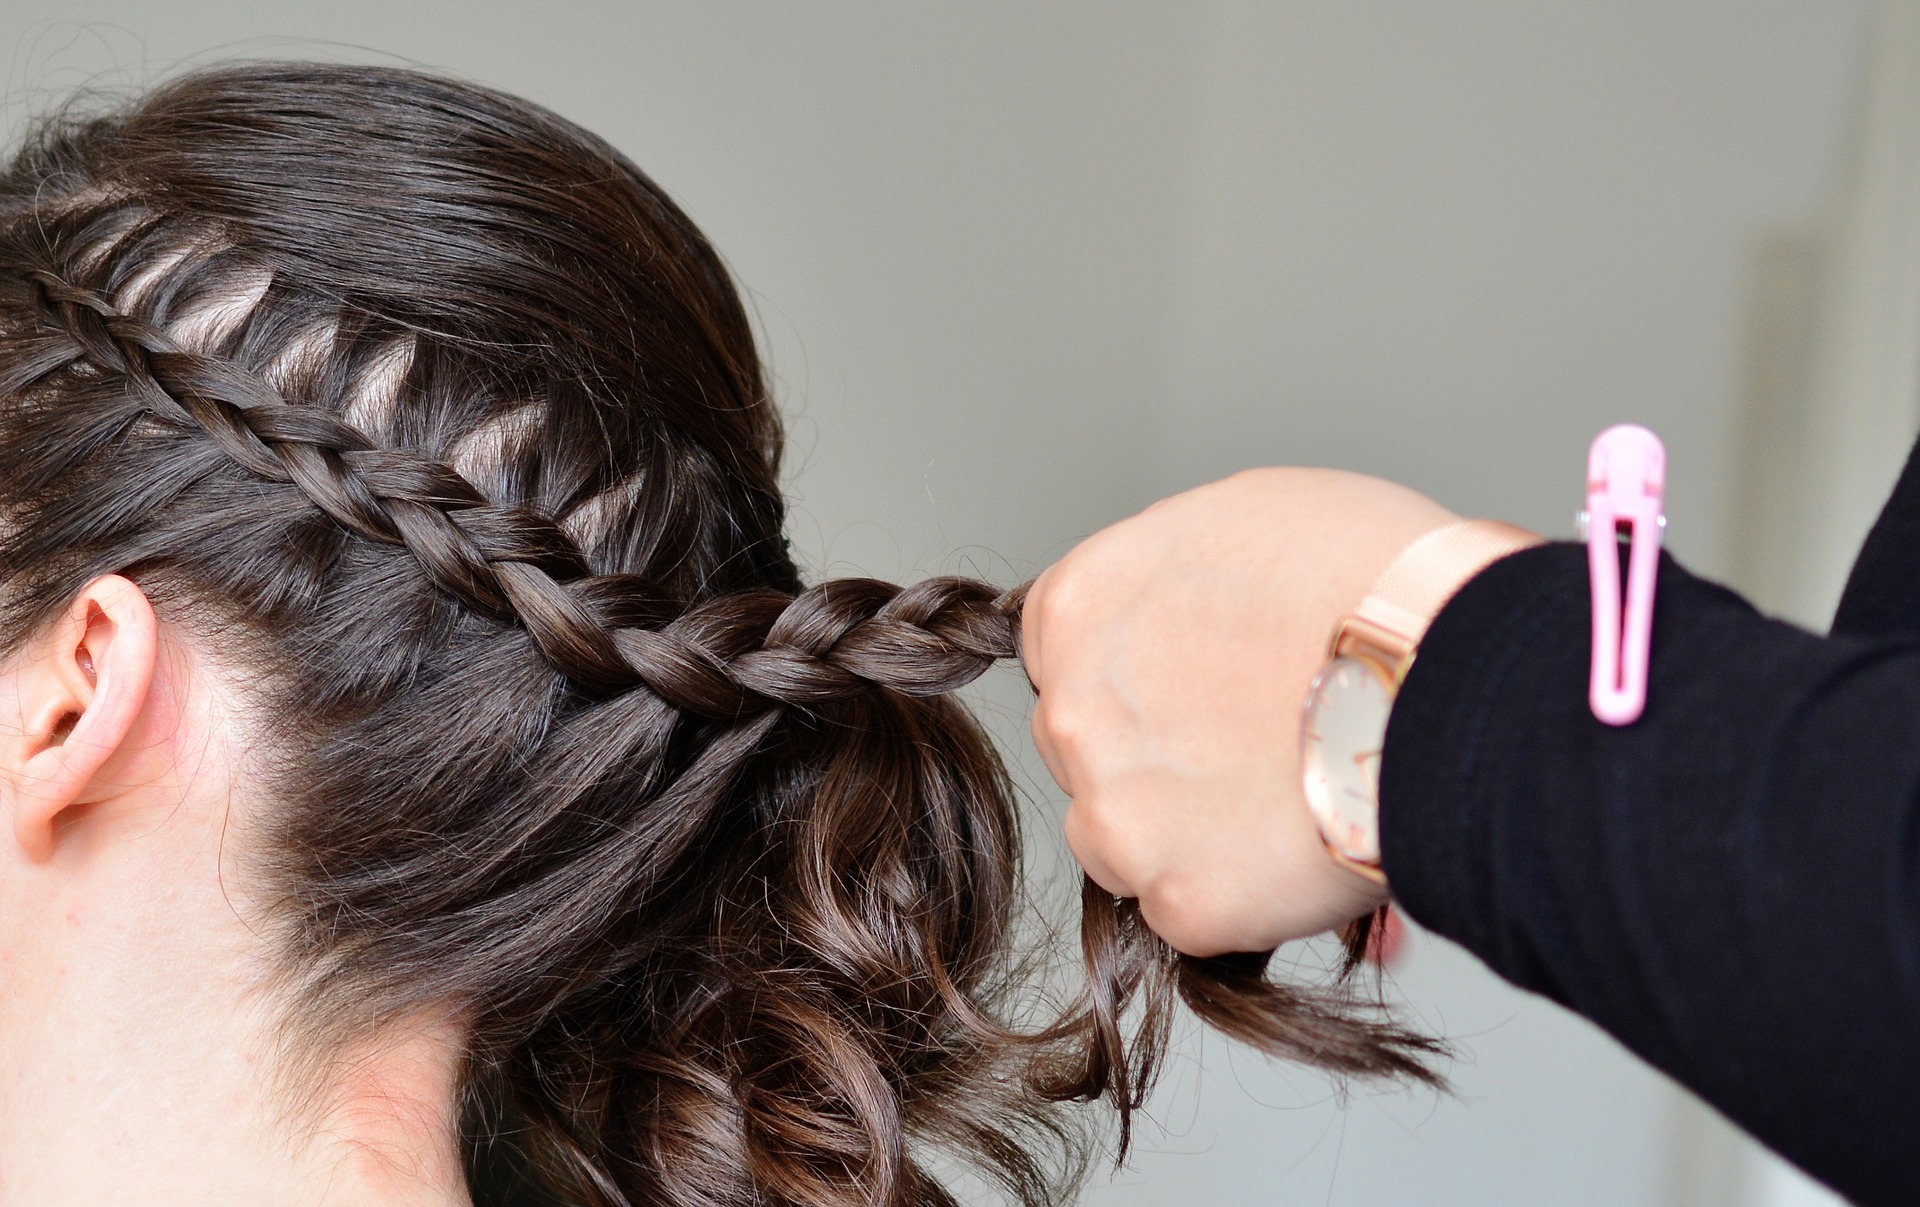 HAIR WEAVING IN HYDERABAD: KNOWN BEST HAIR STUDIO FOR HAIR WEAVING